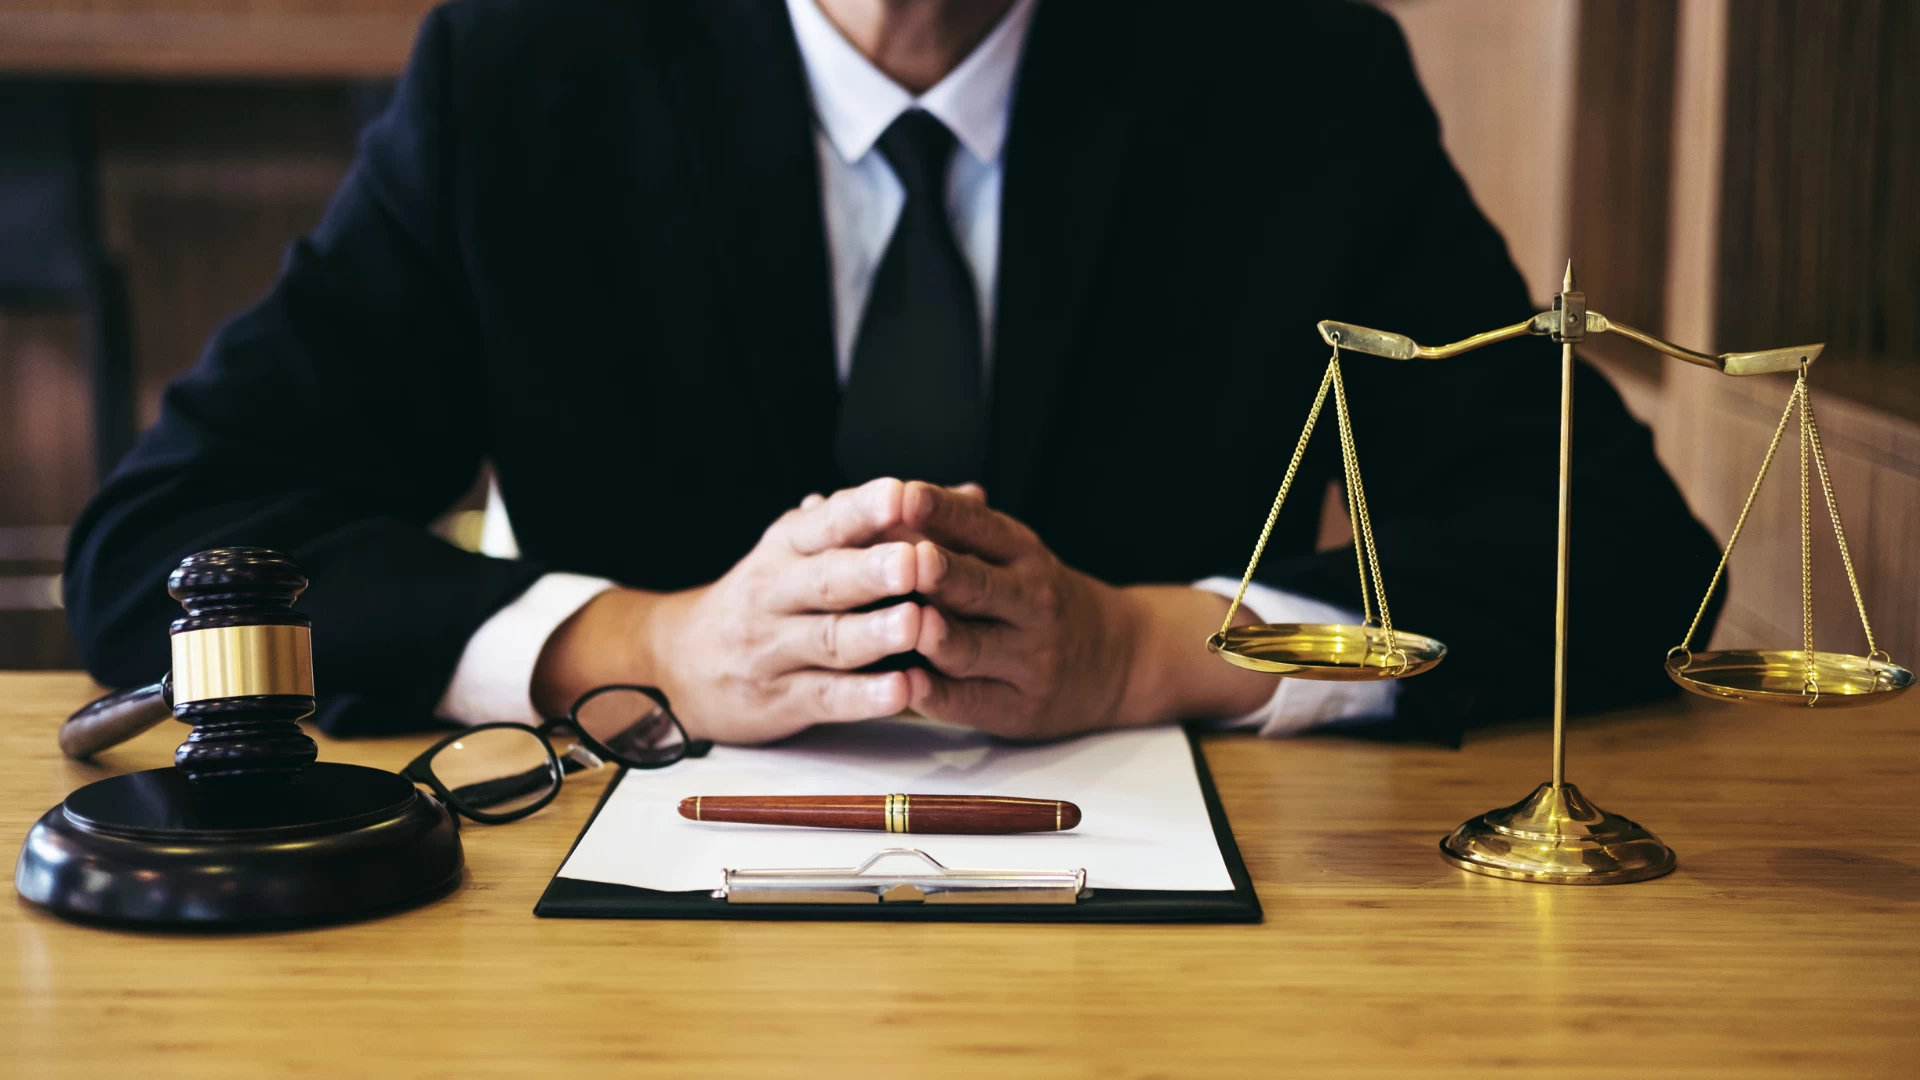 Avukat seçimi neden önemlidir?